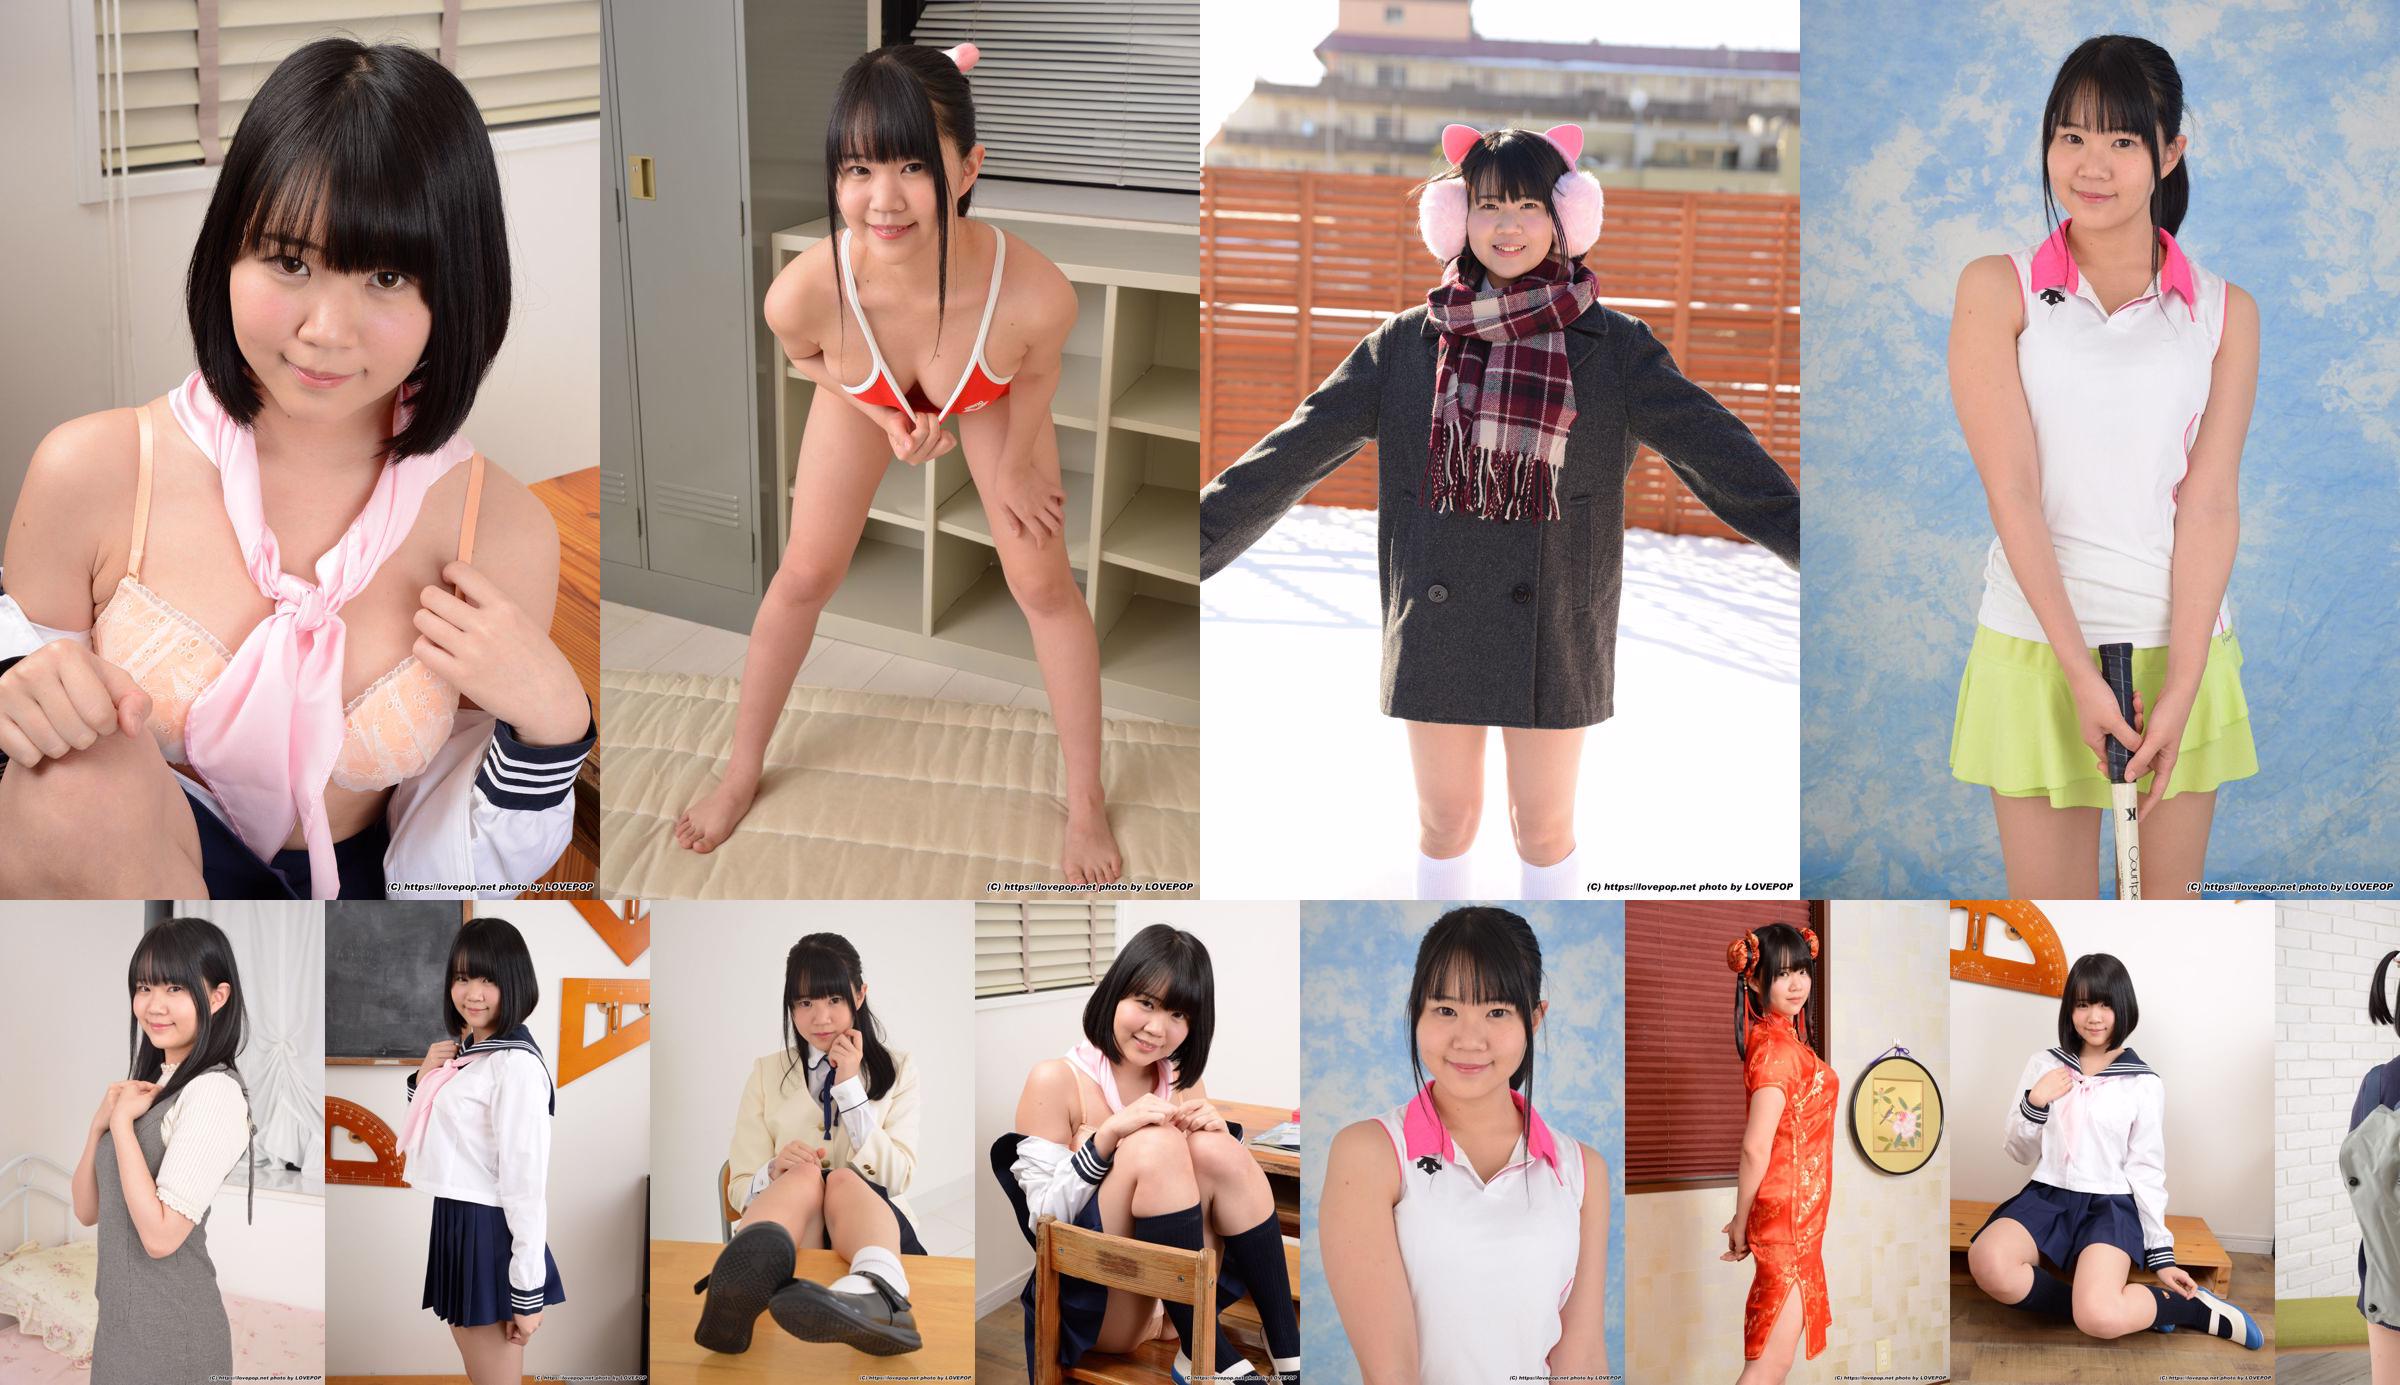 [LOVEPOP] Hinata Suzumori Hinata Suzumori / Hinata Suzumori Photoset 06 No.30cf40 Page 5